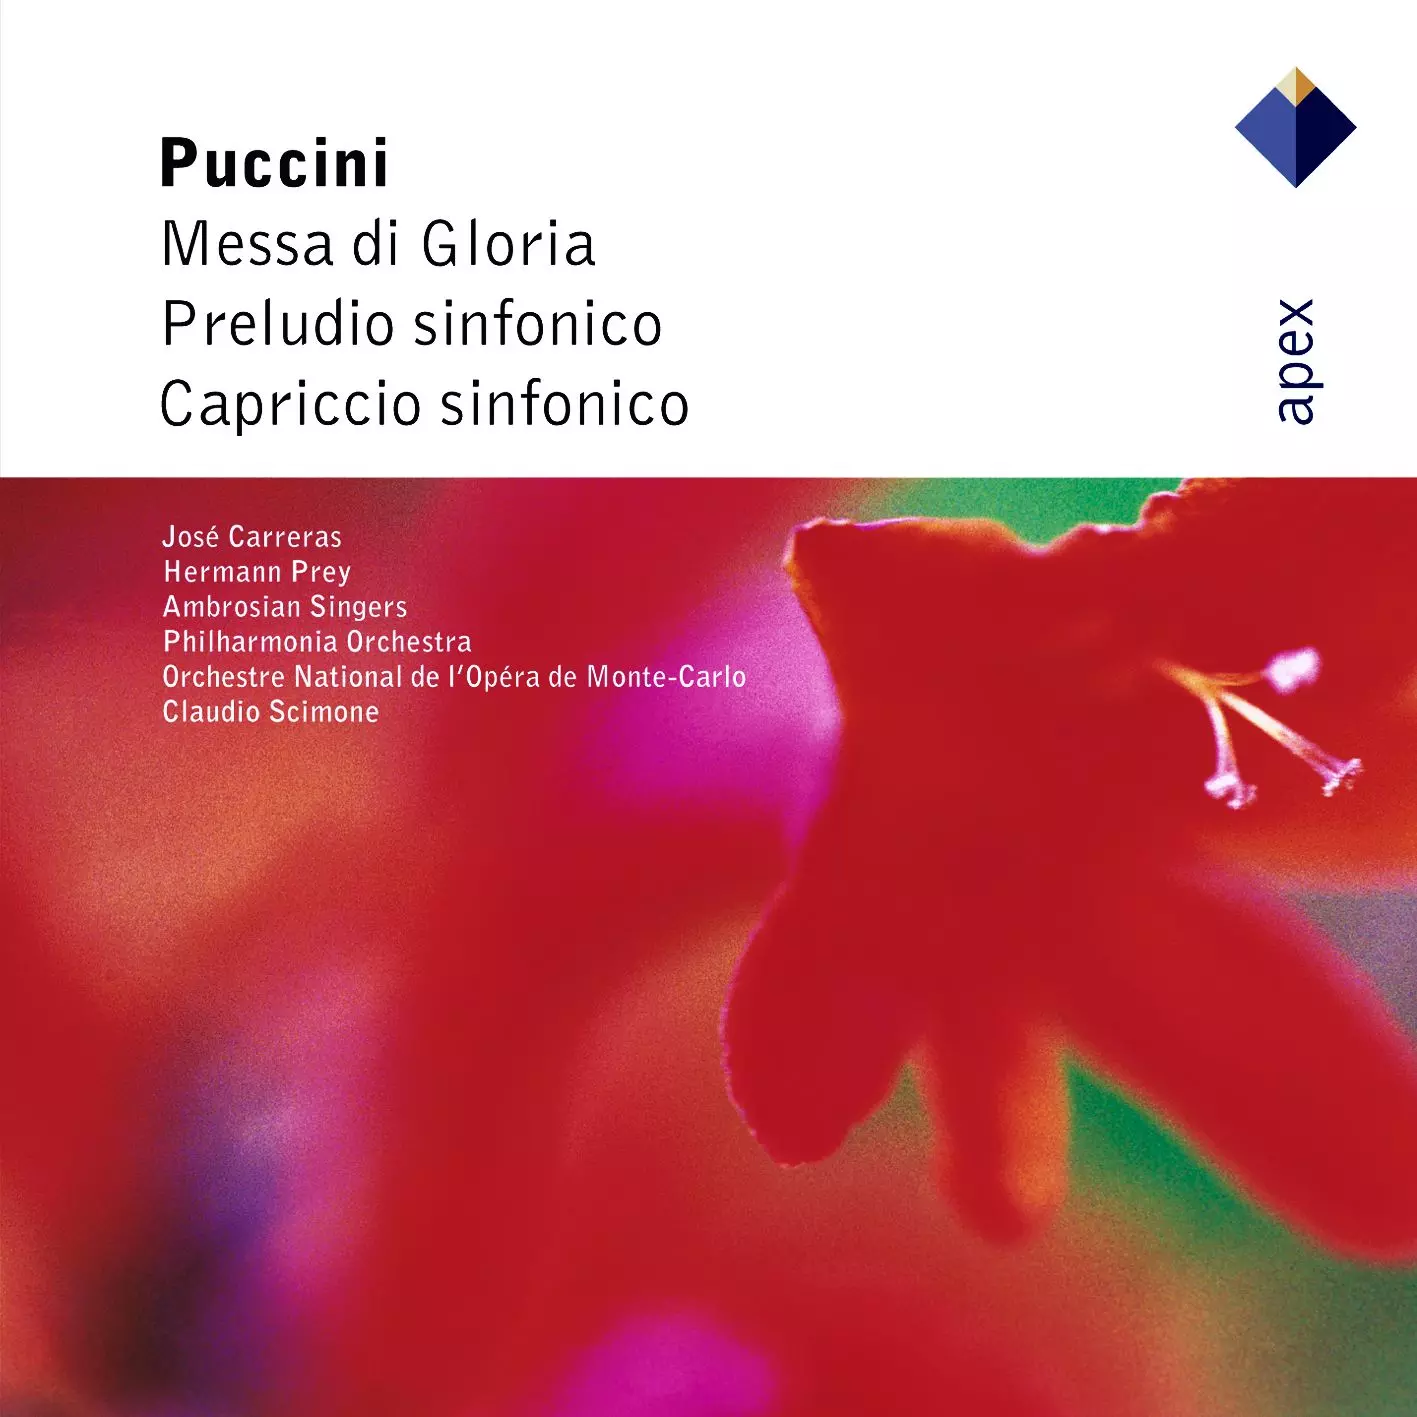 Puccini : Messa di Gloria, Preludio sinfonico & Capriccio sinfonico